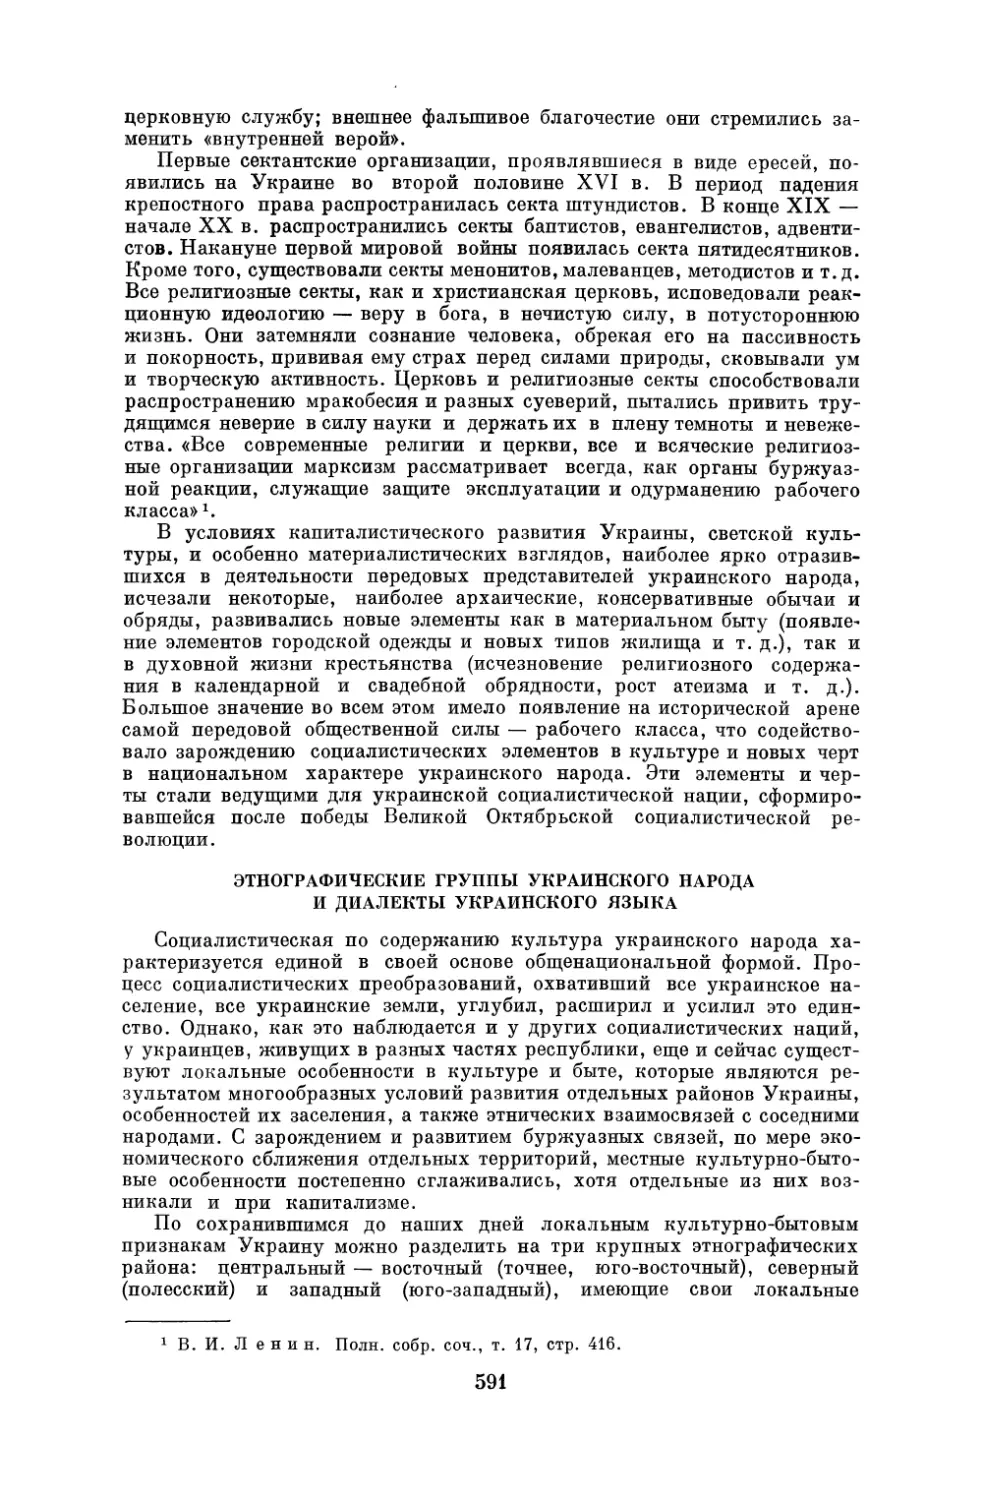 Этнографические группы украинского народа и диалекты украинского языка